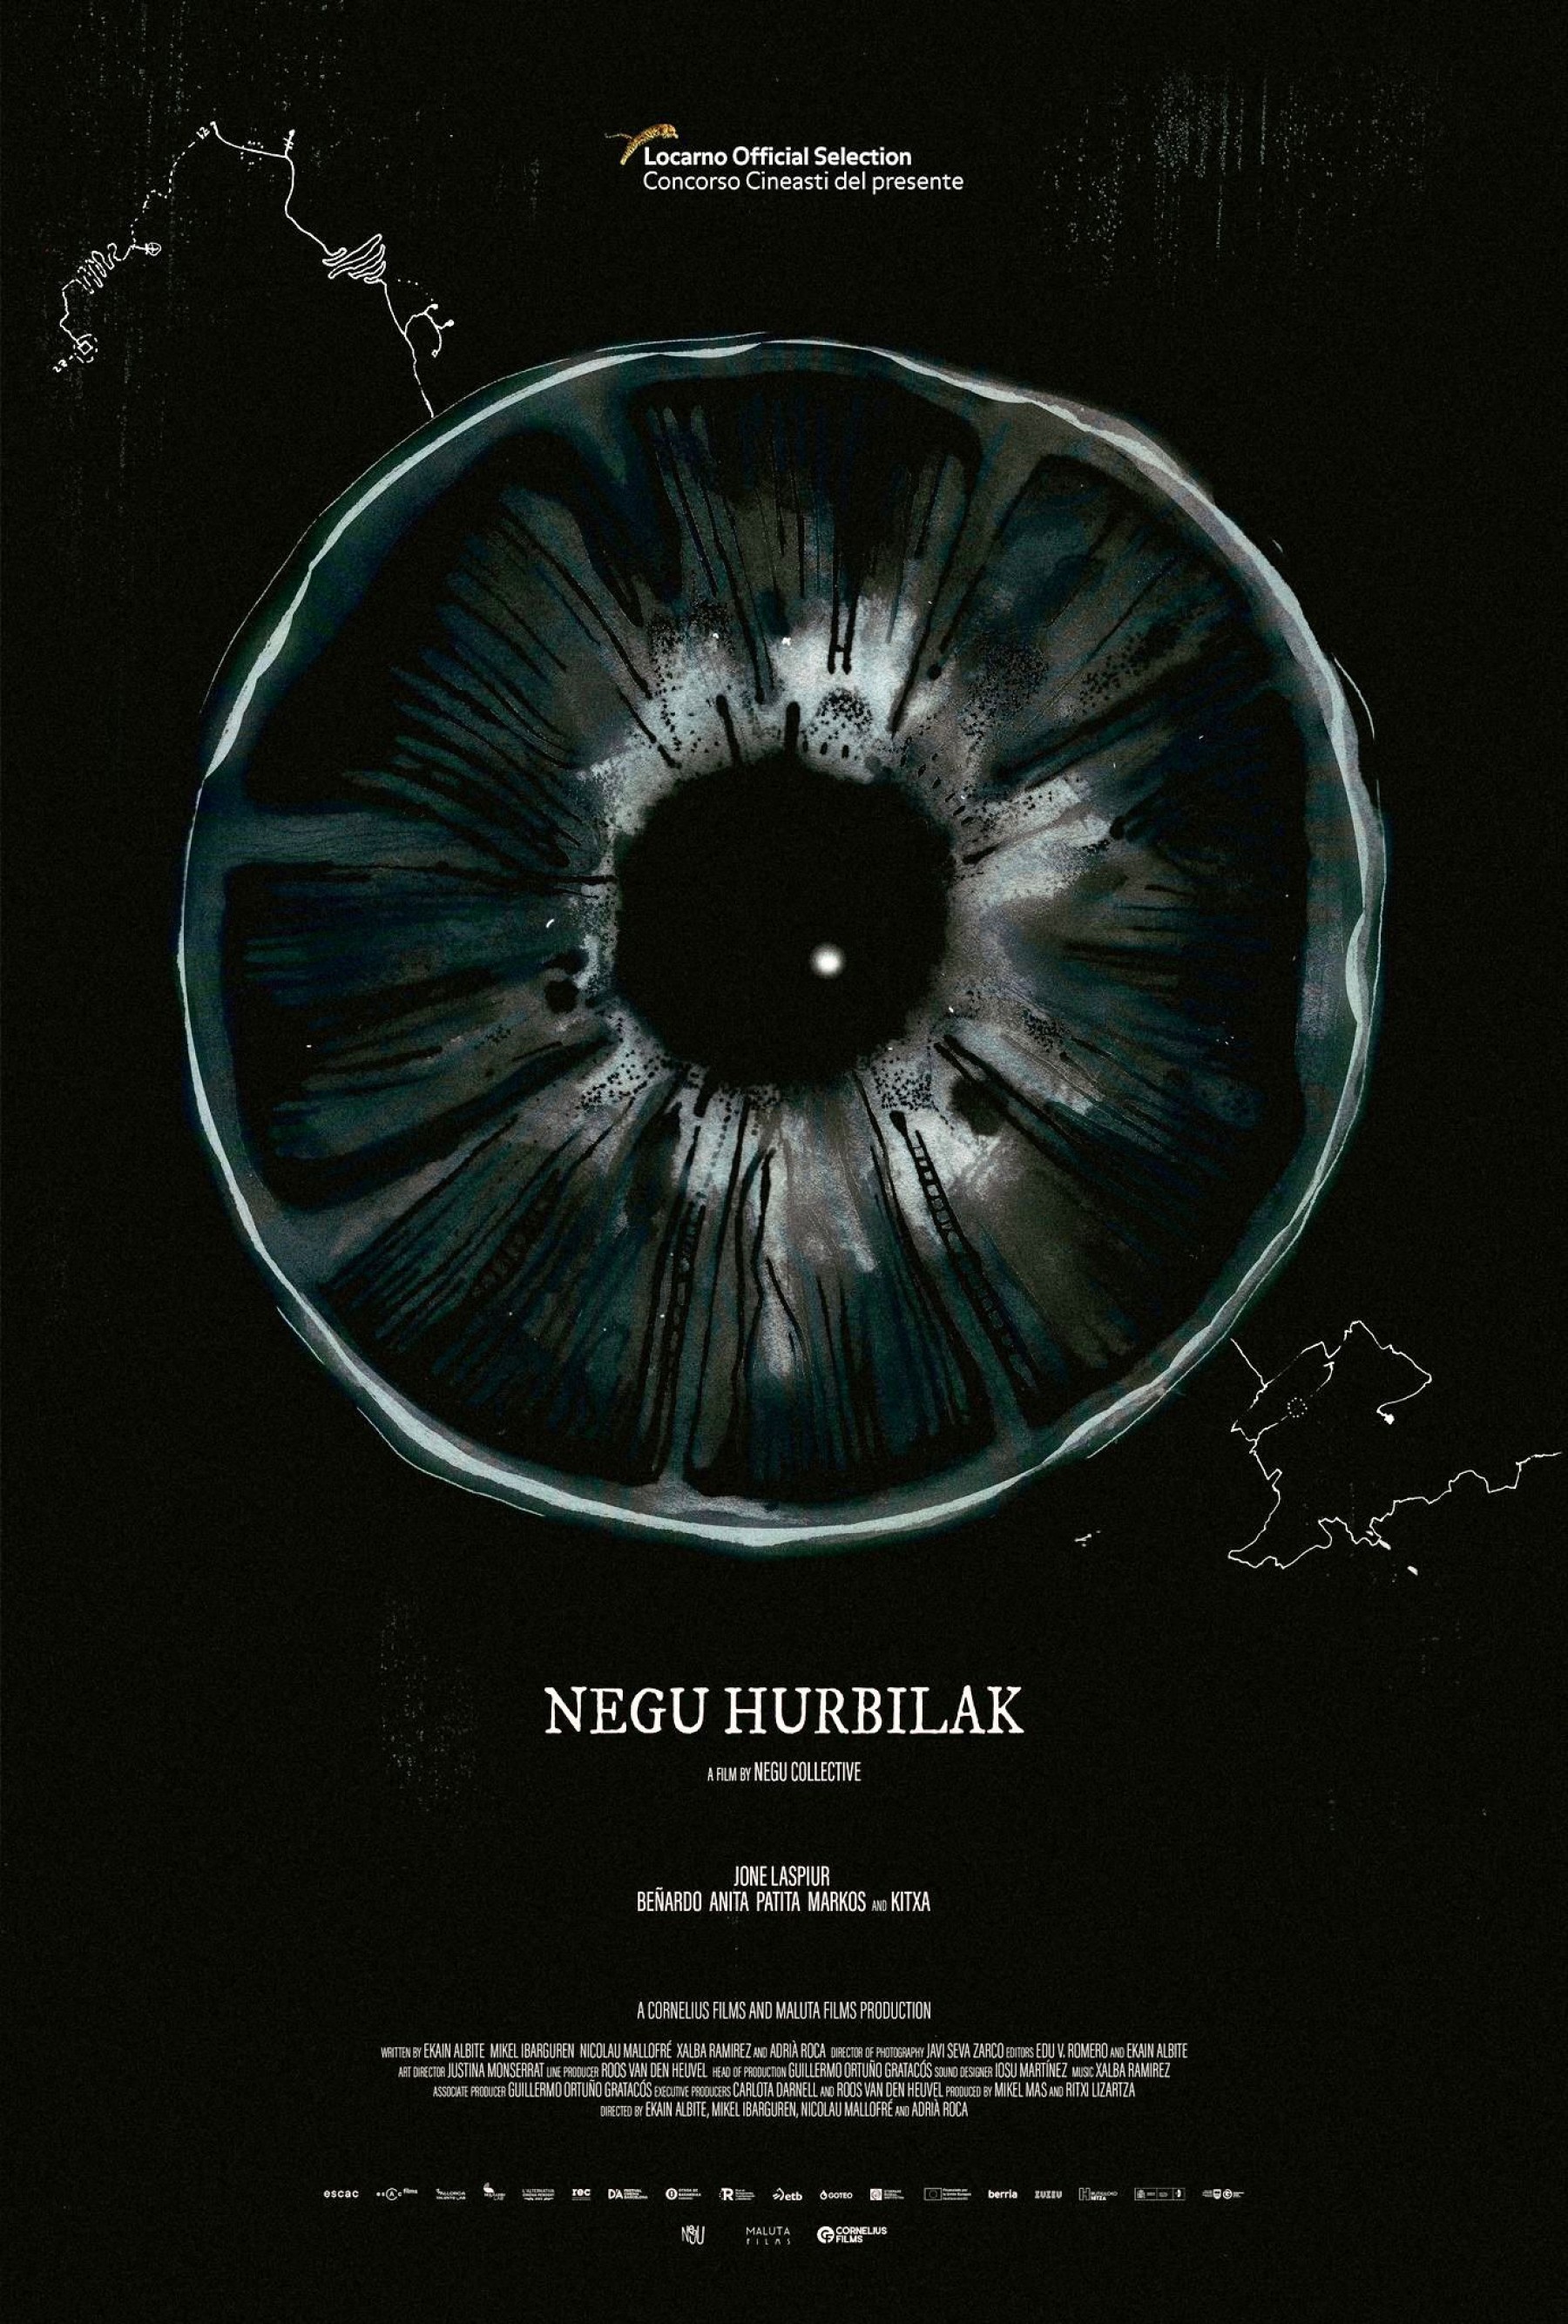  ¡’Negu hurbilak’ se estrenará mundialmente en el Festival de Locarno! 